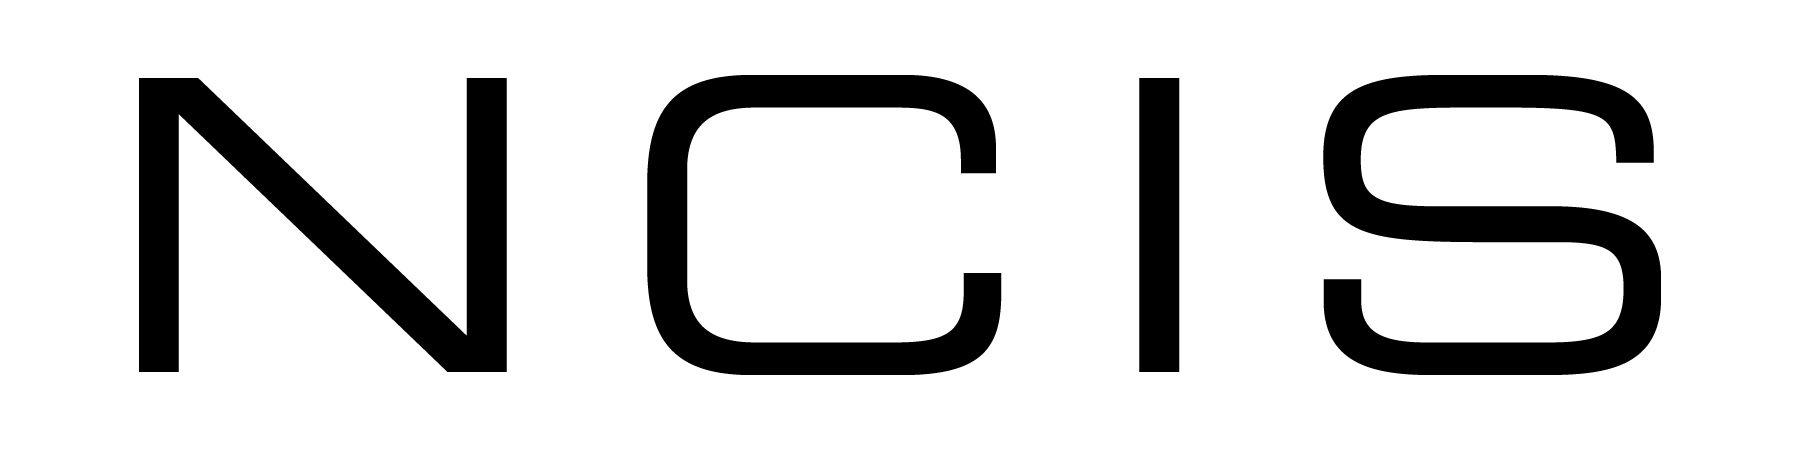 NCIS Logo - Ncis Logos